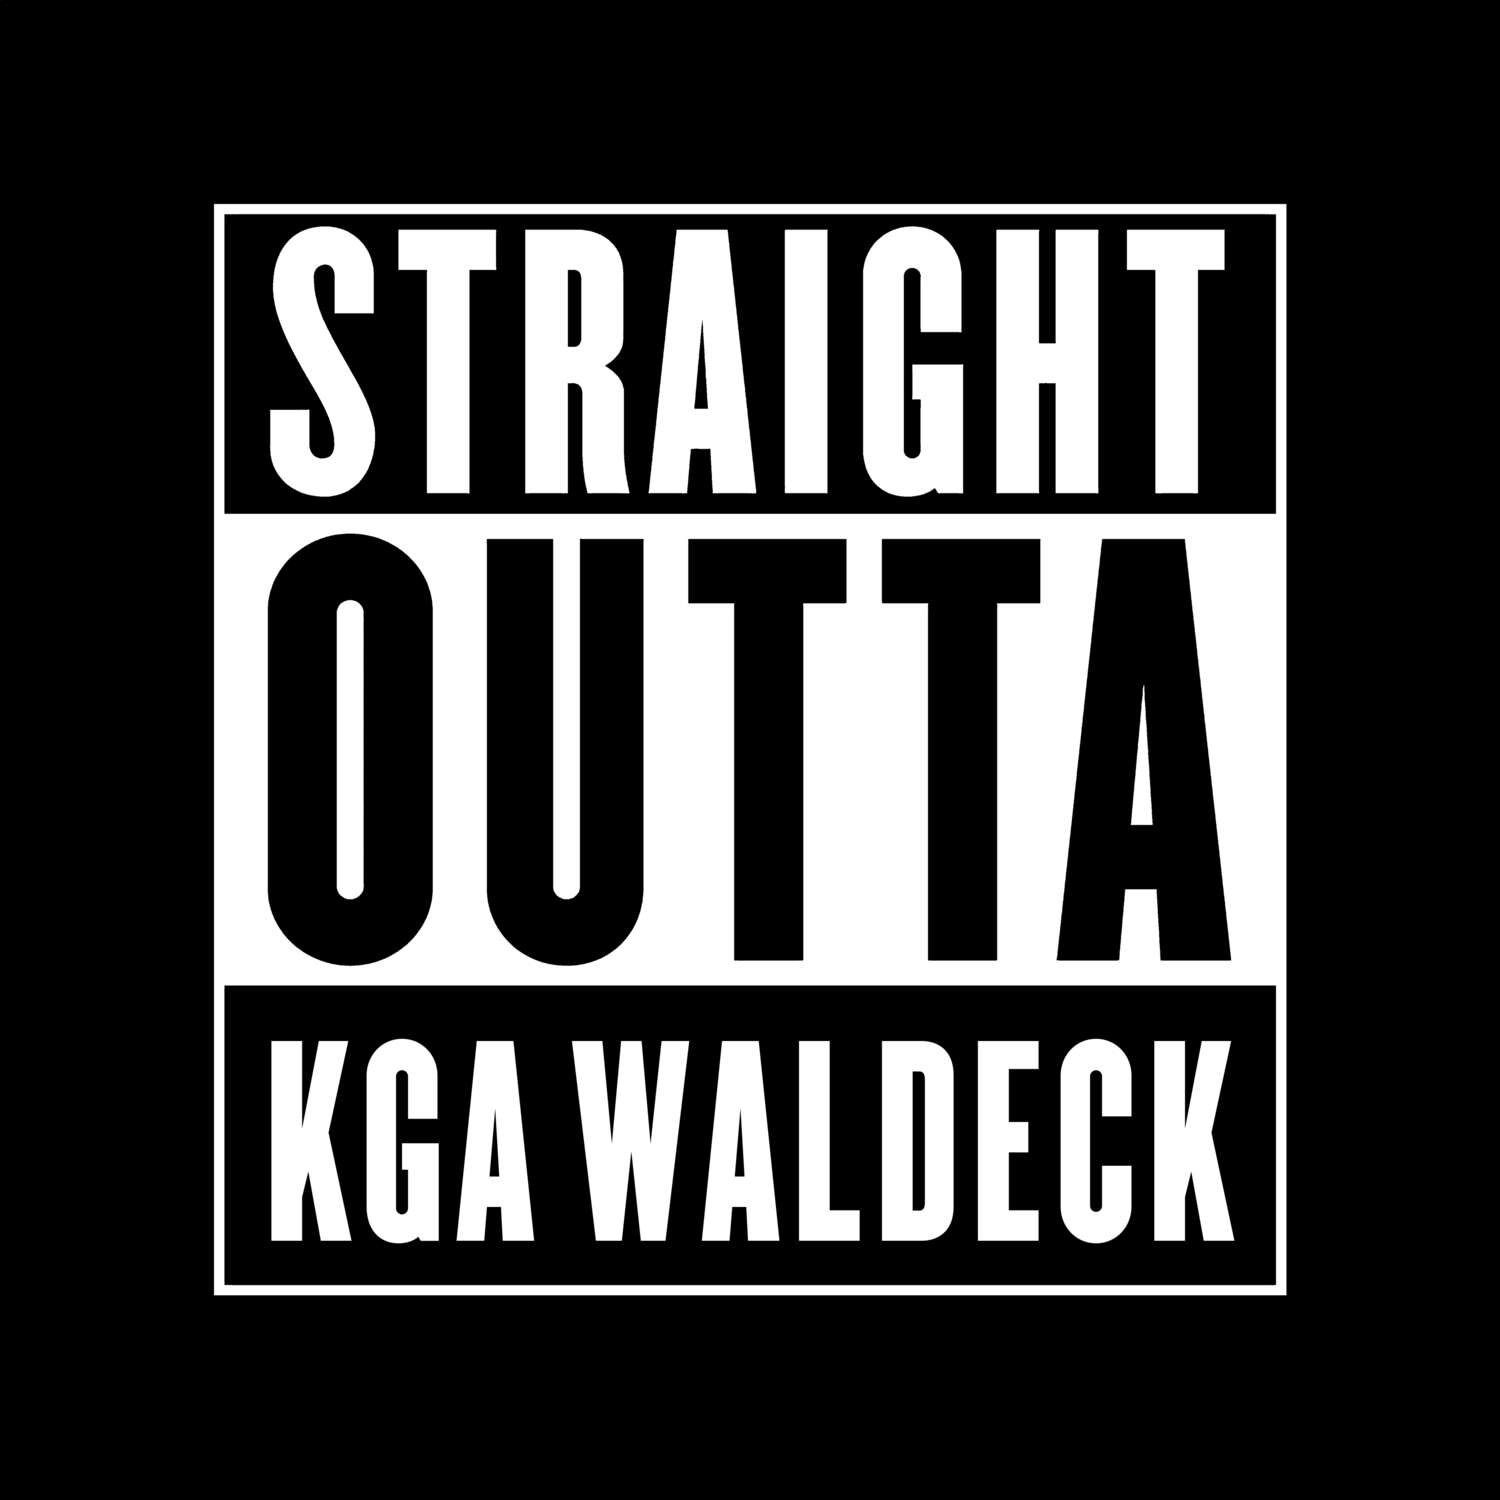 KGA Waldeck T-Shirt »Straight Outta«